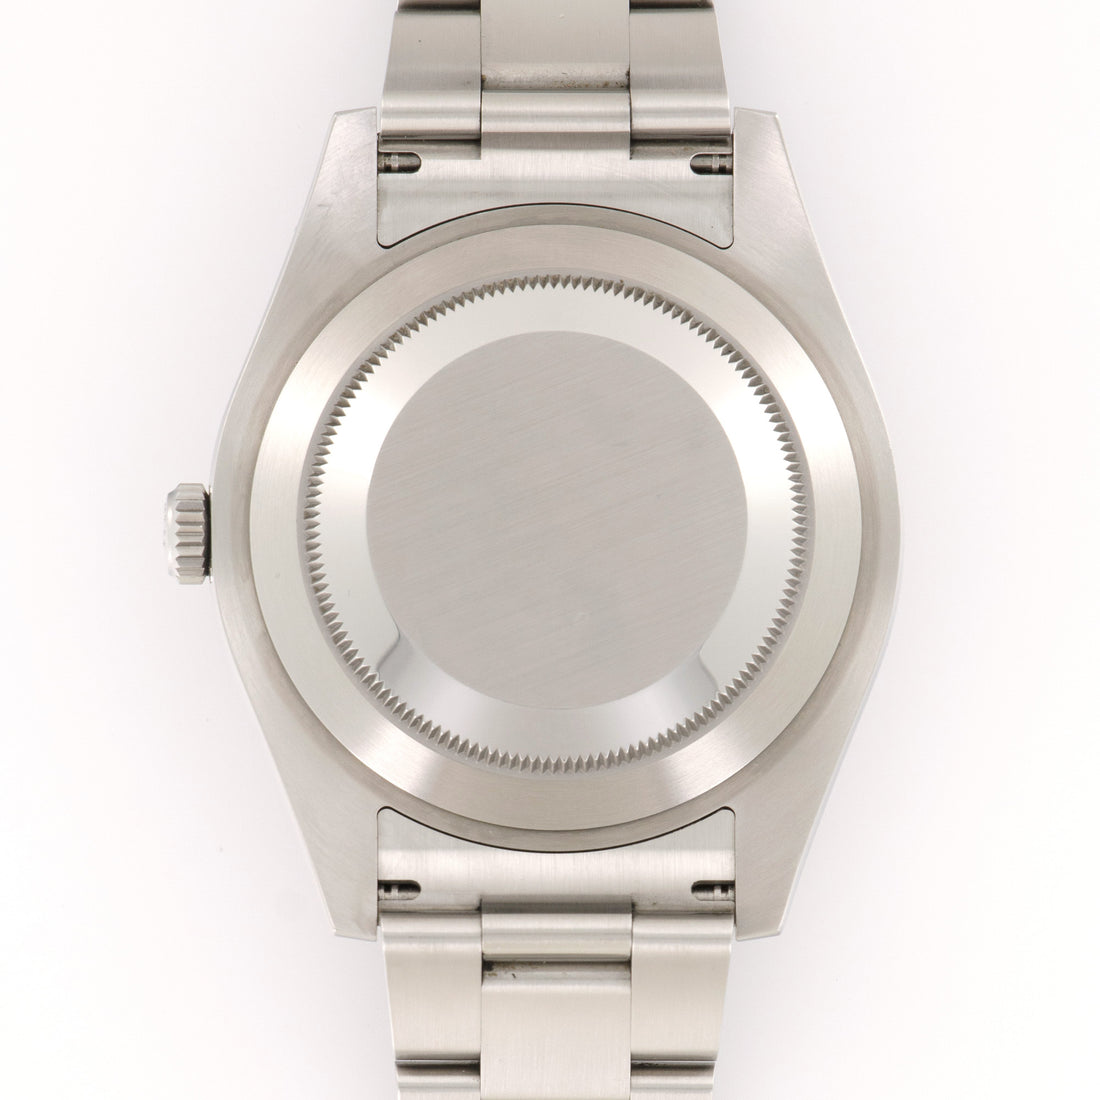 Rolex Datejust II Watch Ref. 116300